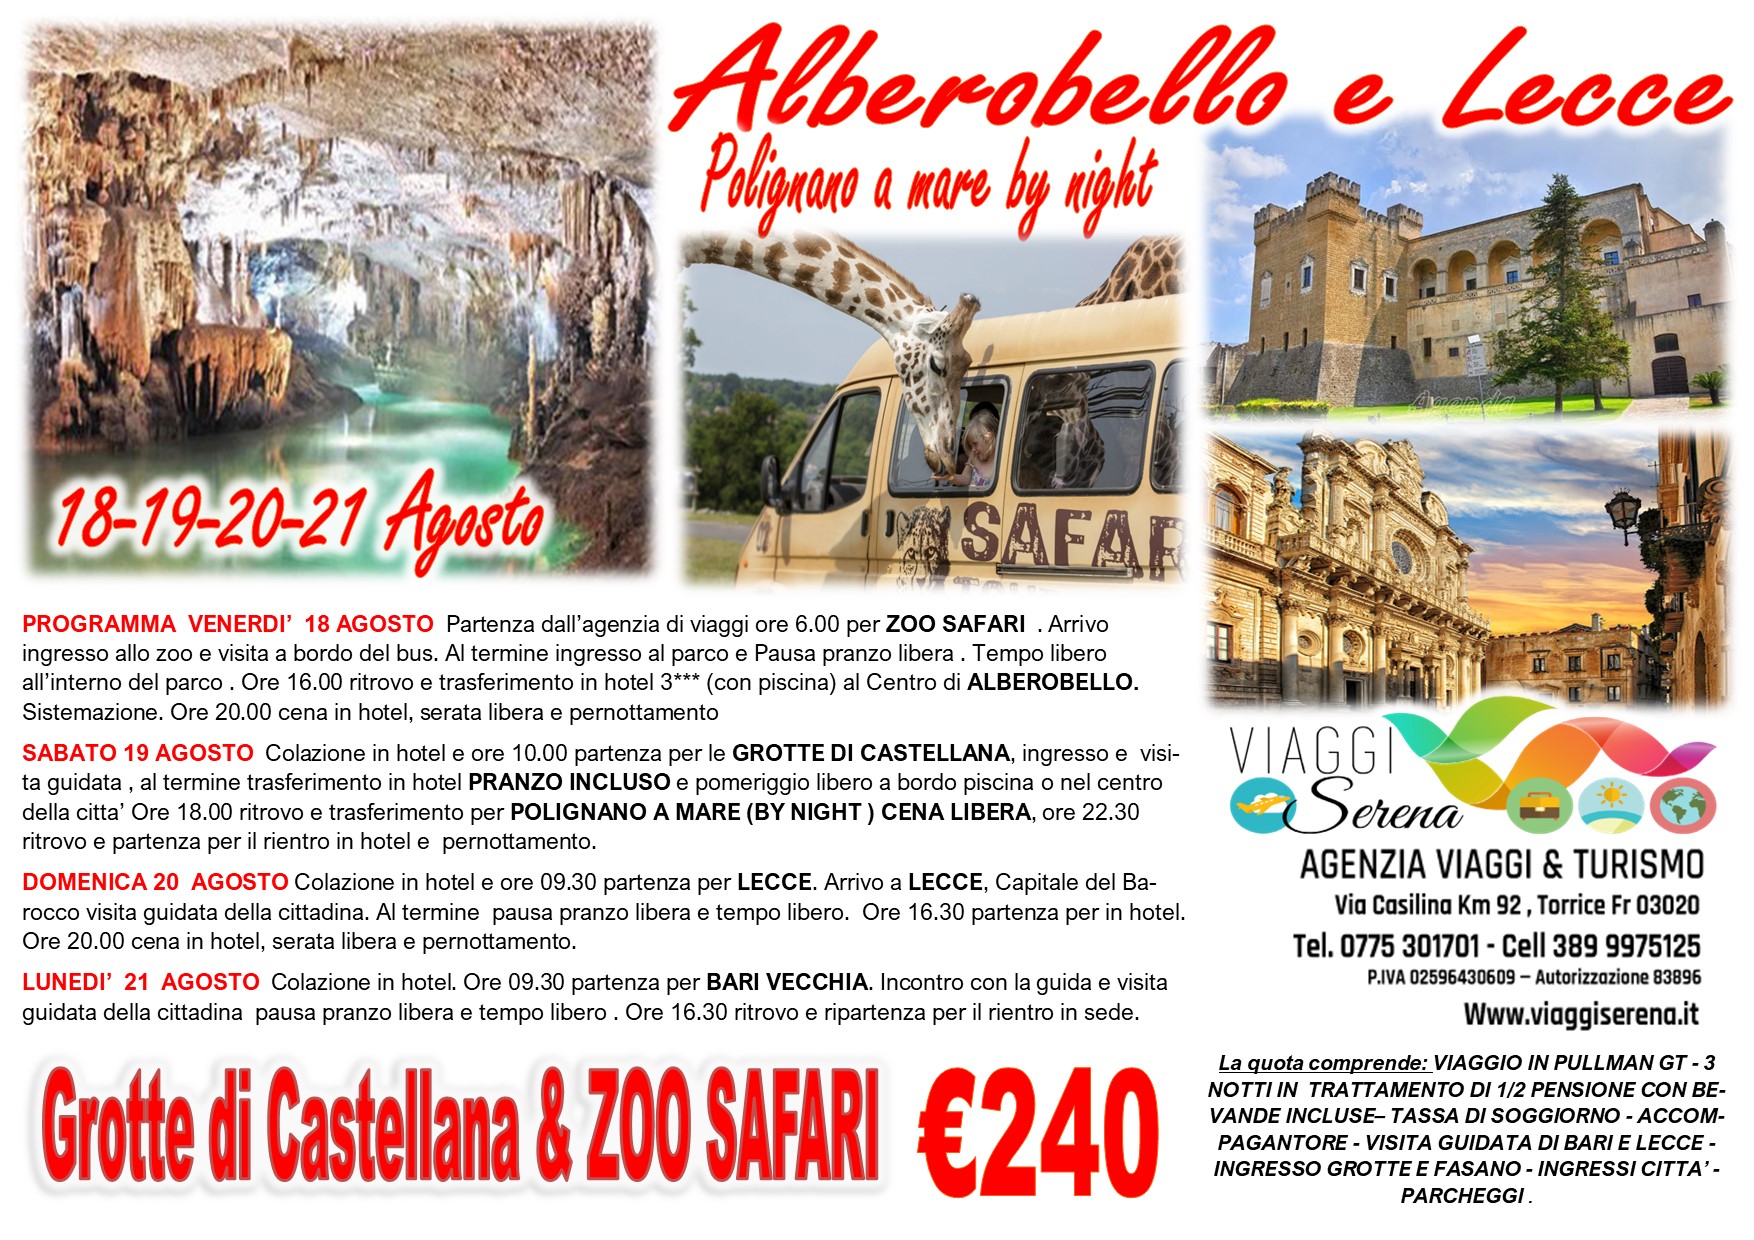 Viaggi di Gruppo: Puglia 2023 Alberobello, Grotte di Castellana, Lecce & Bari Vecchia 18-19-20-21 Agosto € 240,00